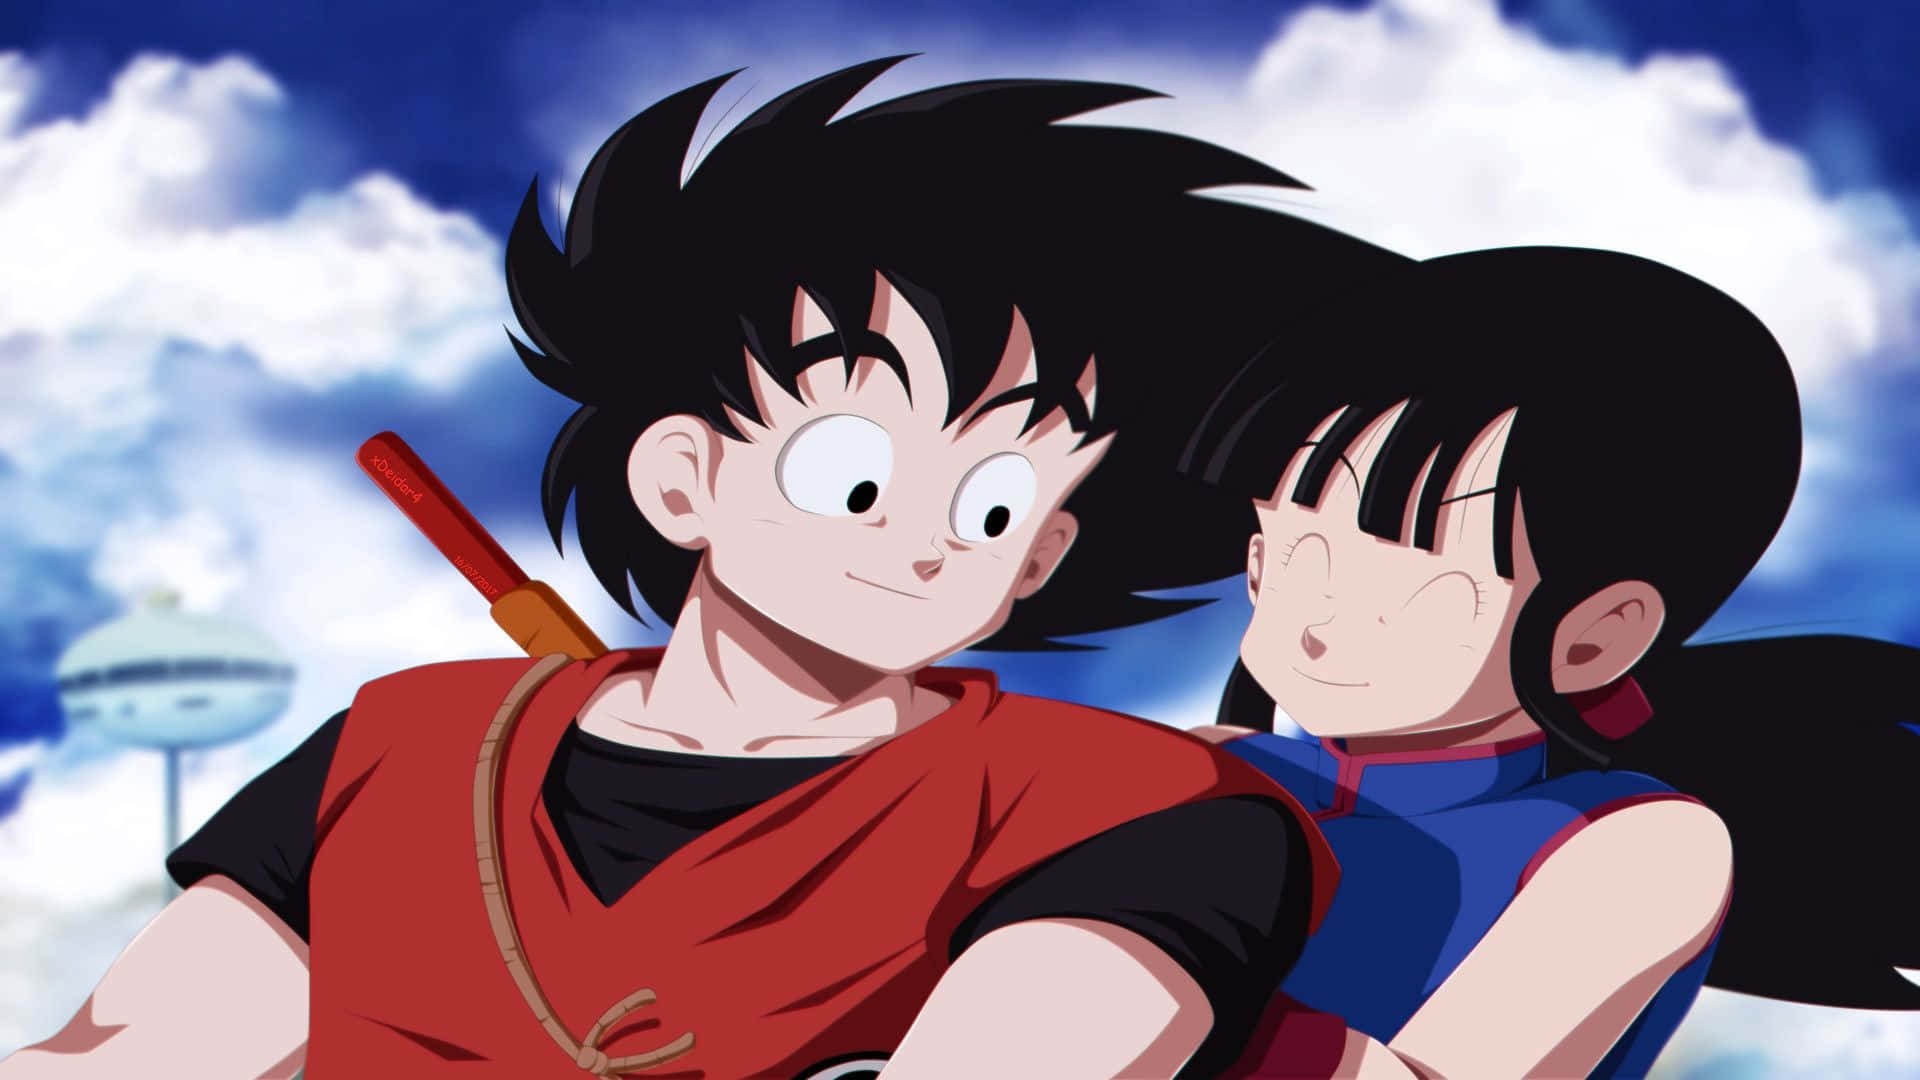 Goku og Chichi i et episk øjeblik af kærlighed, fred og samhørighed Wallpaper